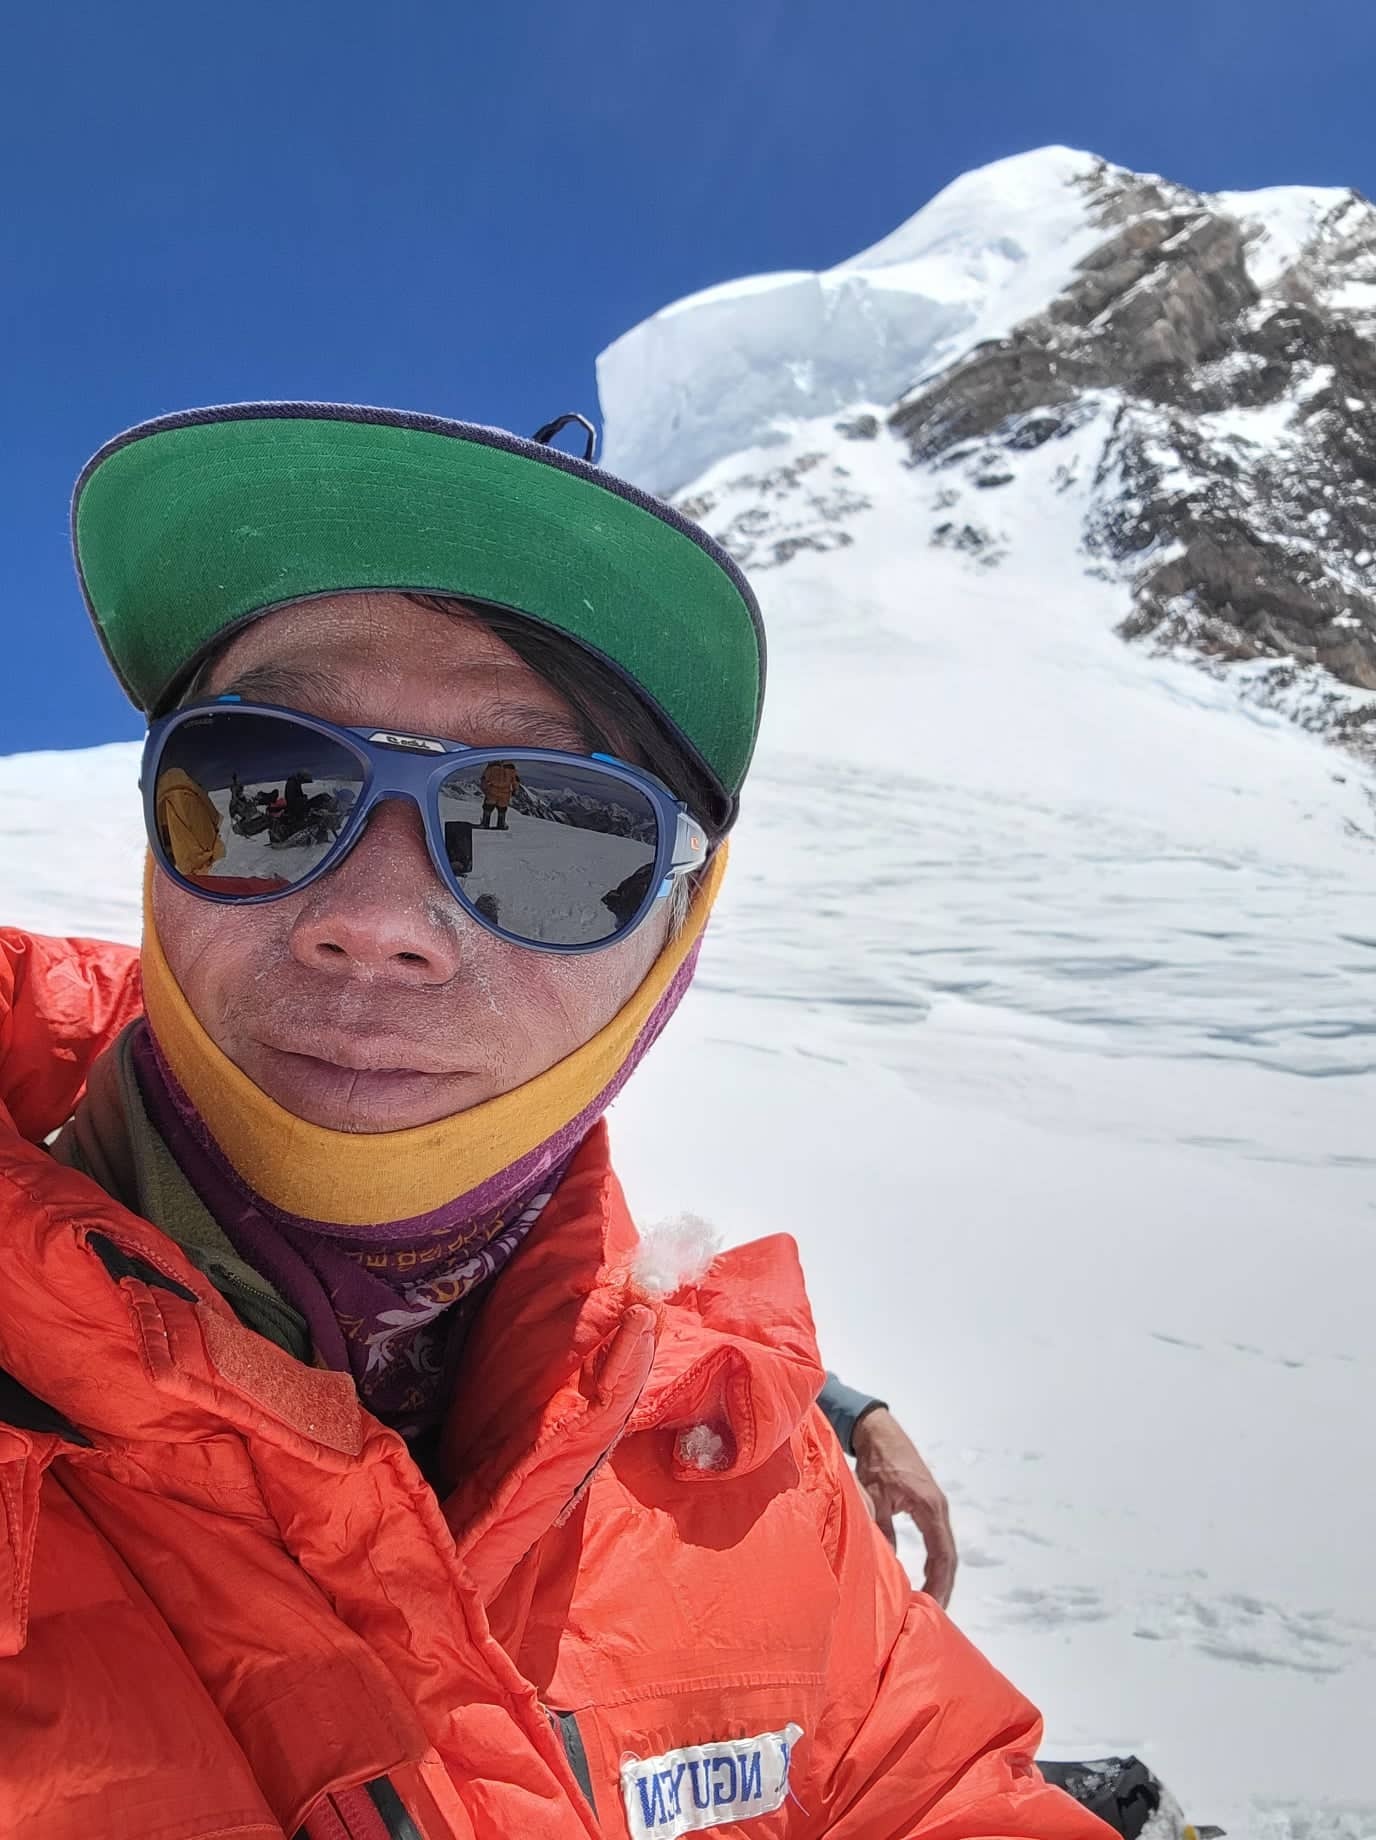 Kỹ sư Việt kể chuyện chinh phục đỉnh núi chết chóc - ảnh 4